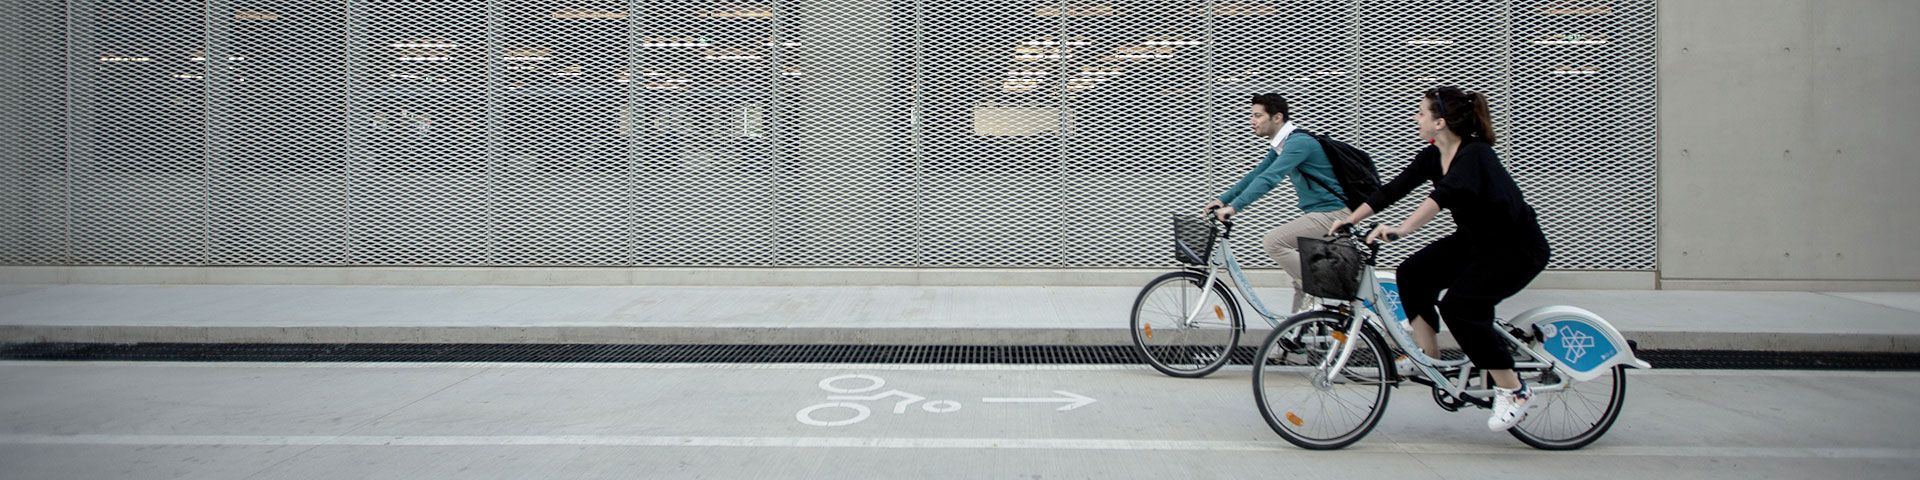 Ποδήλατα - Εικόνα